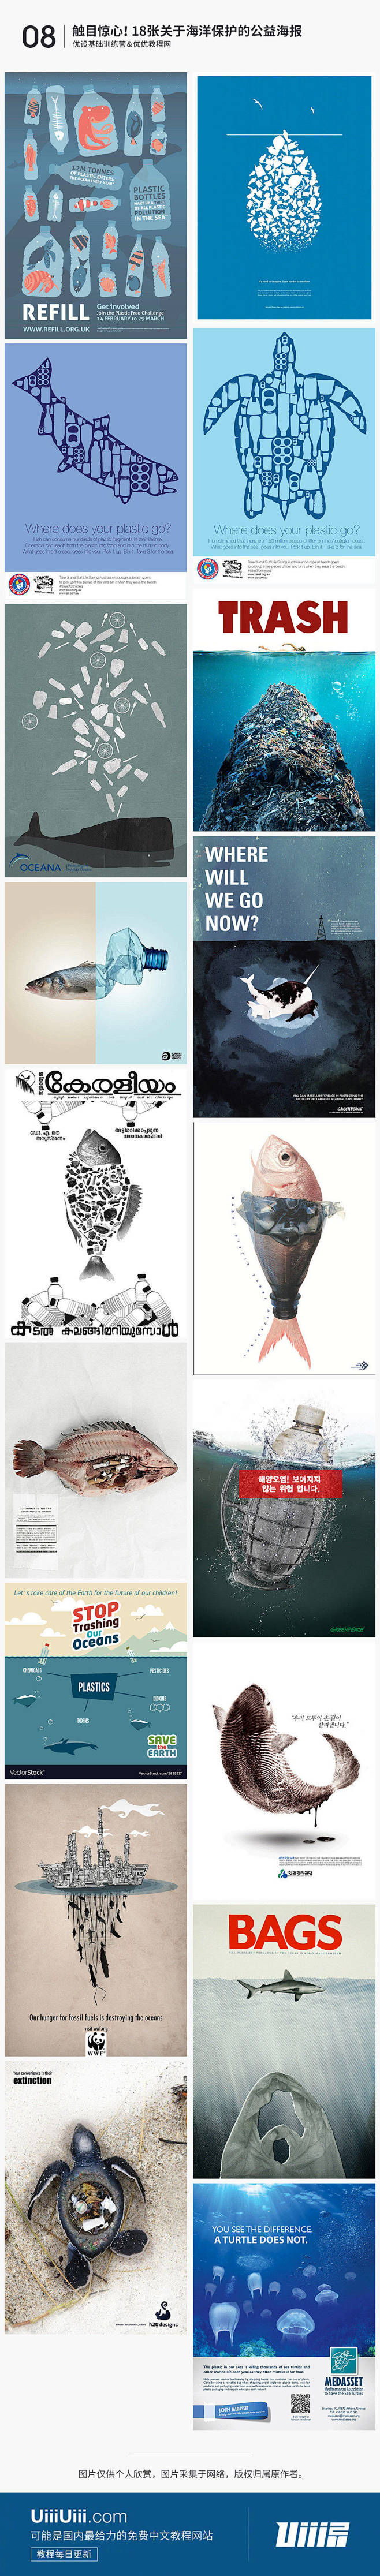 海洋污染设计理念图片